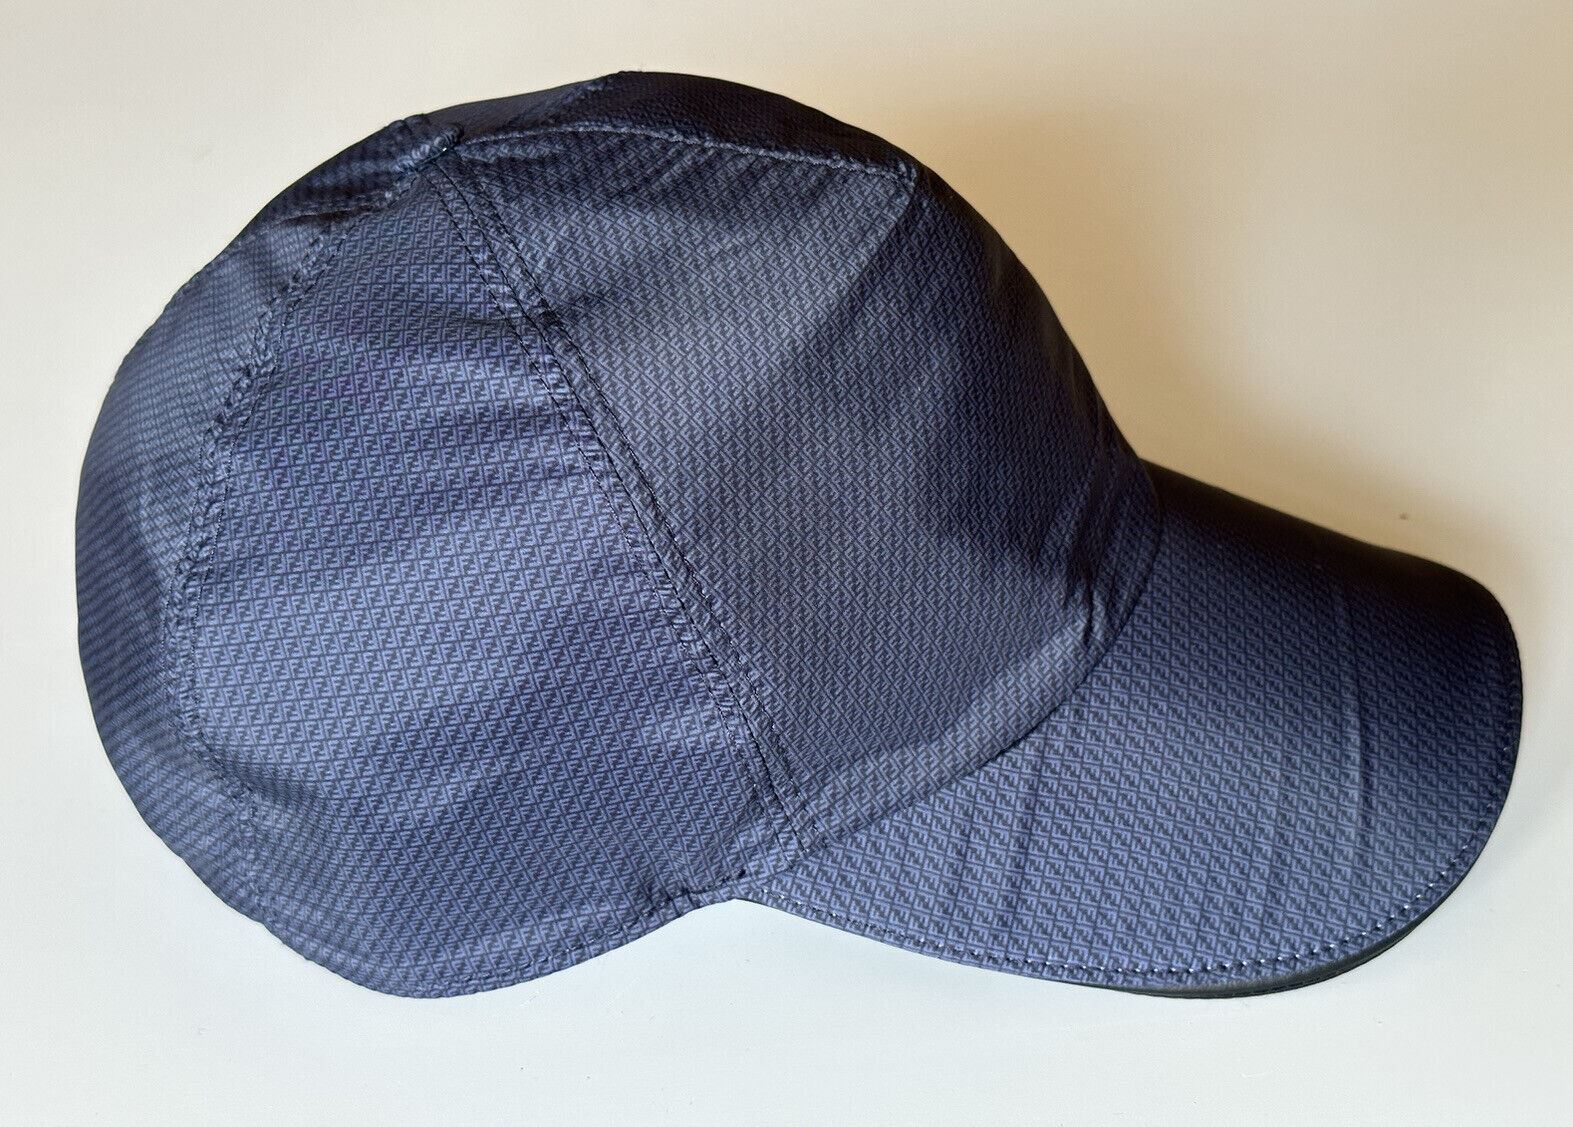 Бейсболка Fendi за 550 долларов США, темно-синяя шляпа, сделано в Италии FXQ768 